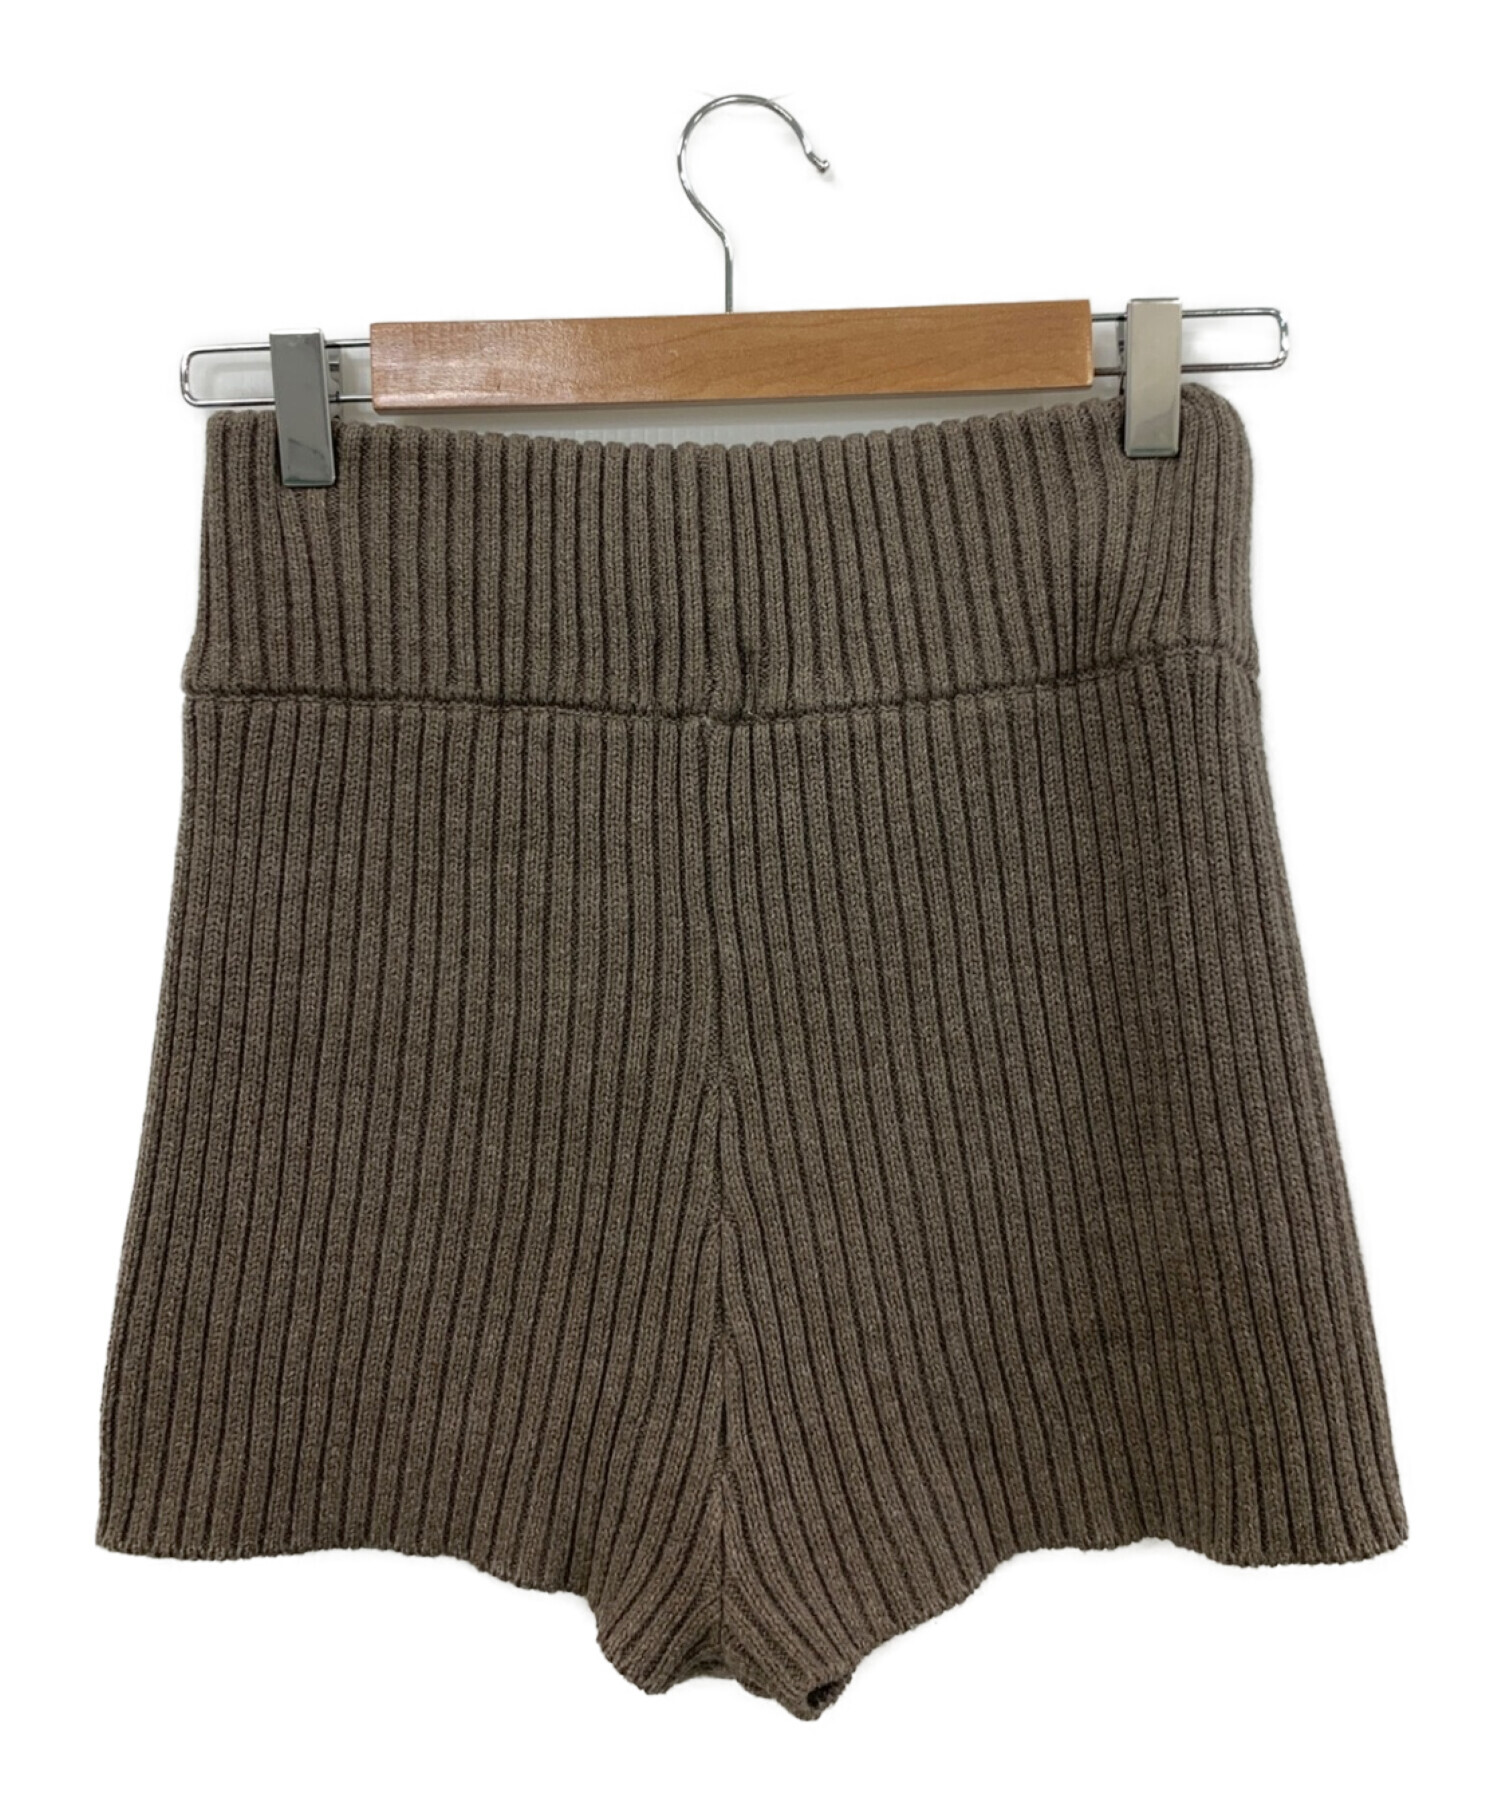 Juemi ニットパンツ Heather Knit Shortsパンツ - ショートパンツ